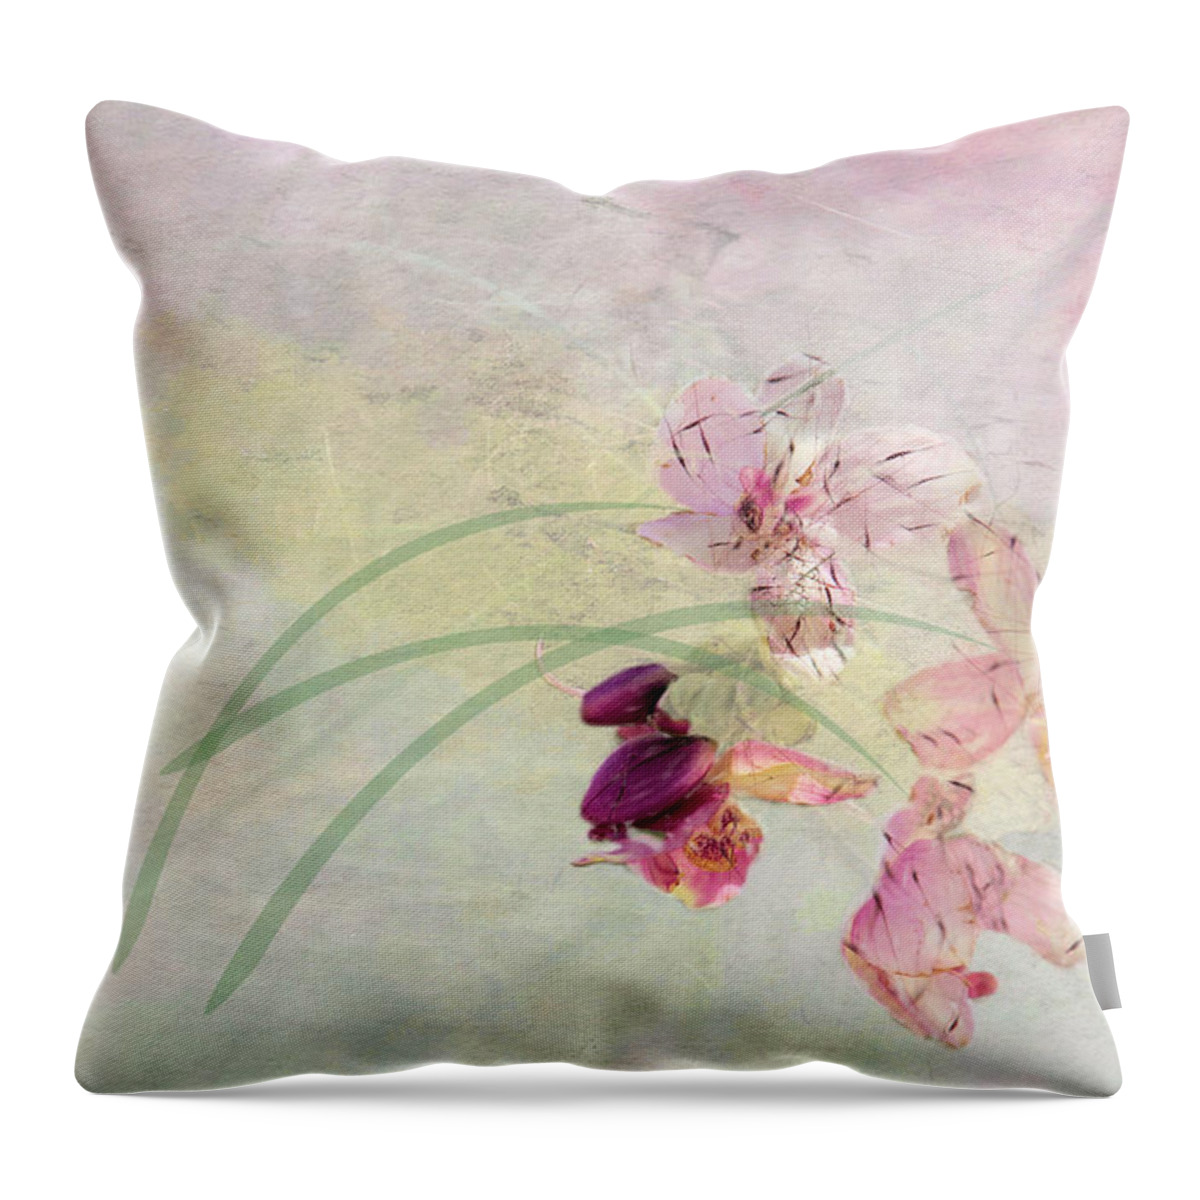 Flower Throw Pillow featuring the photograph Summer Breeze by Rosalie Scanlon